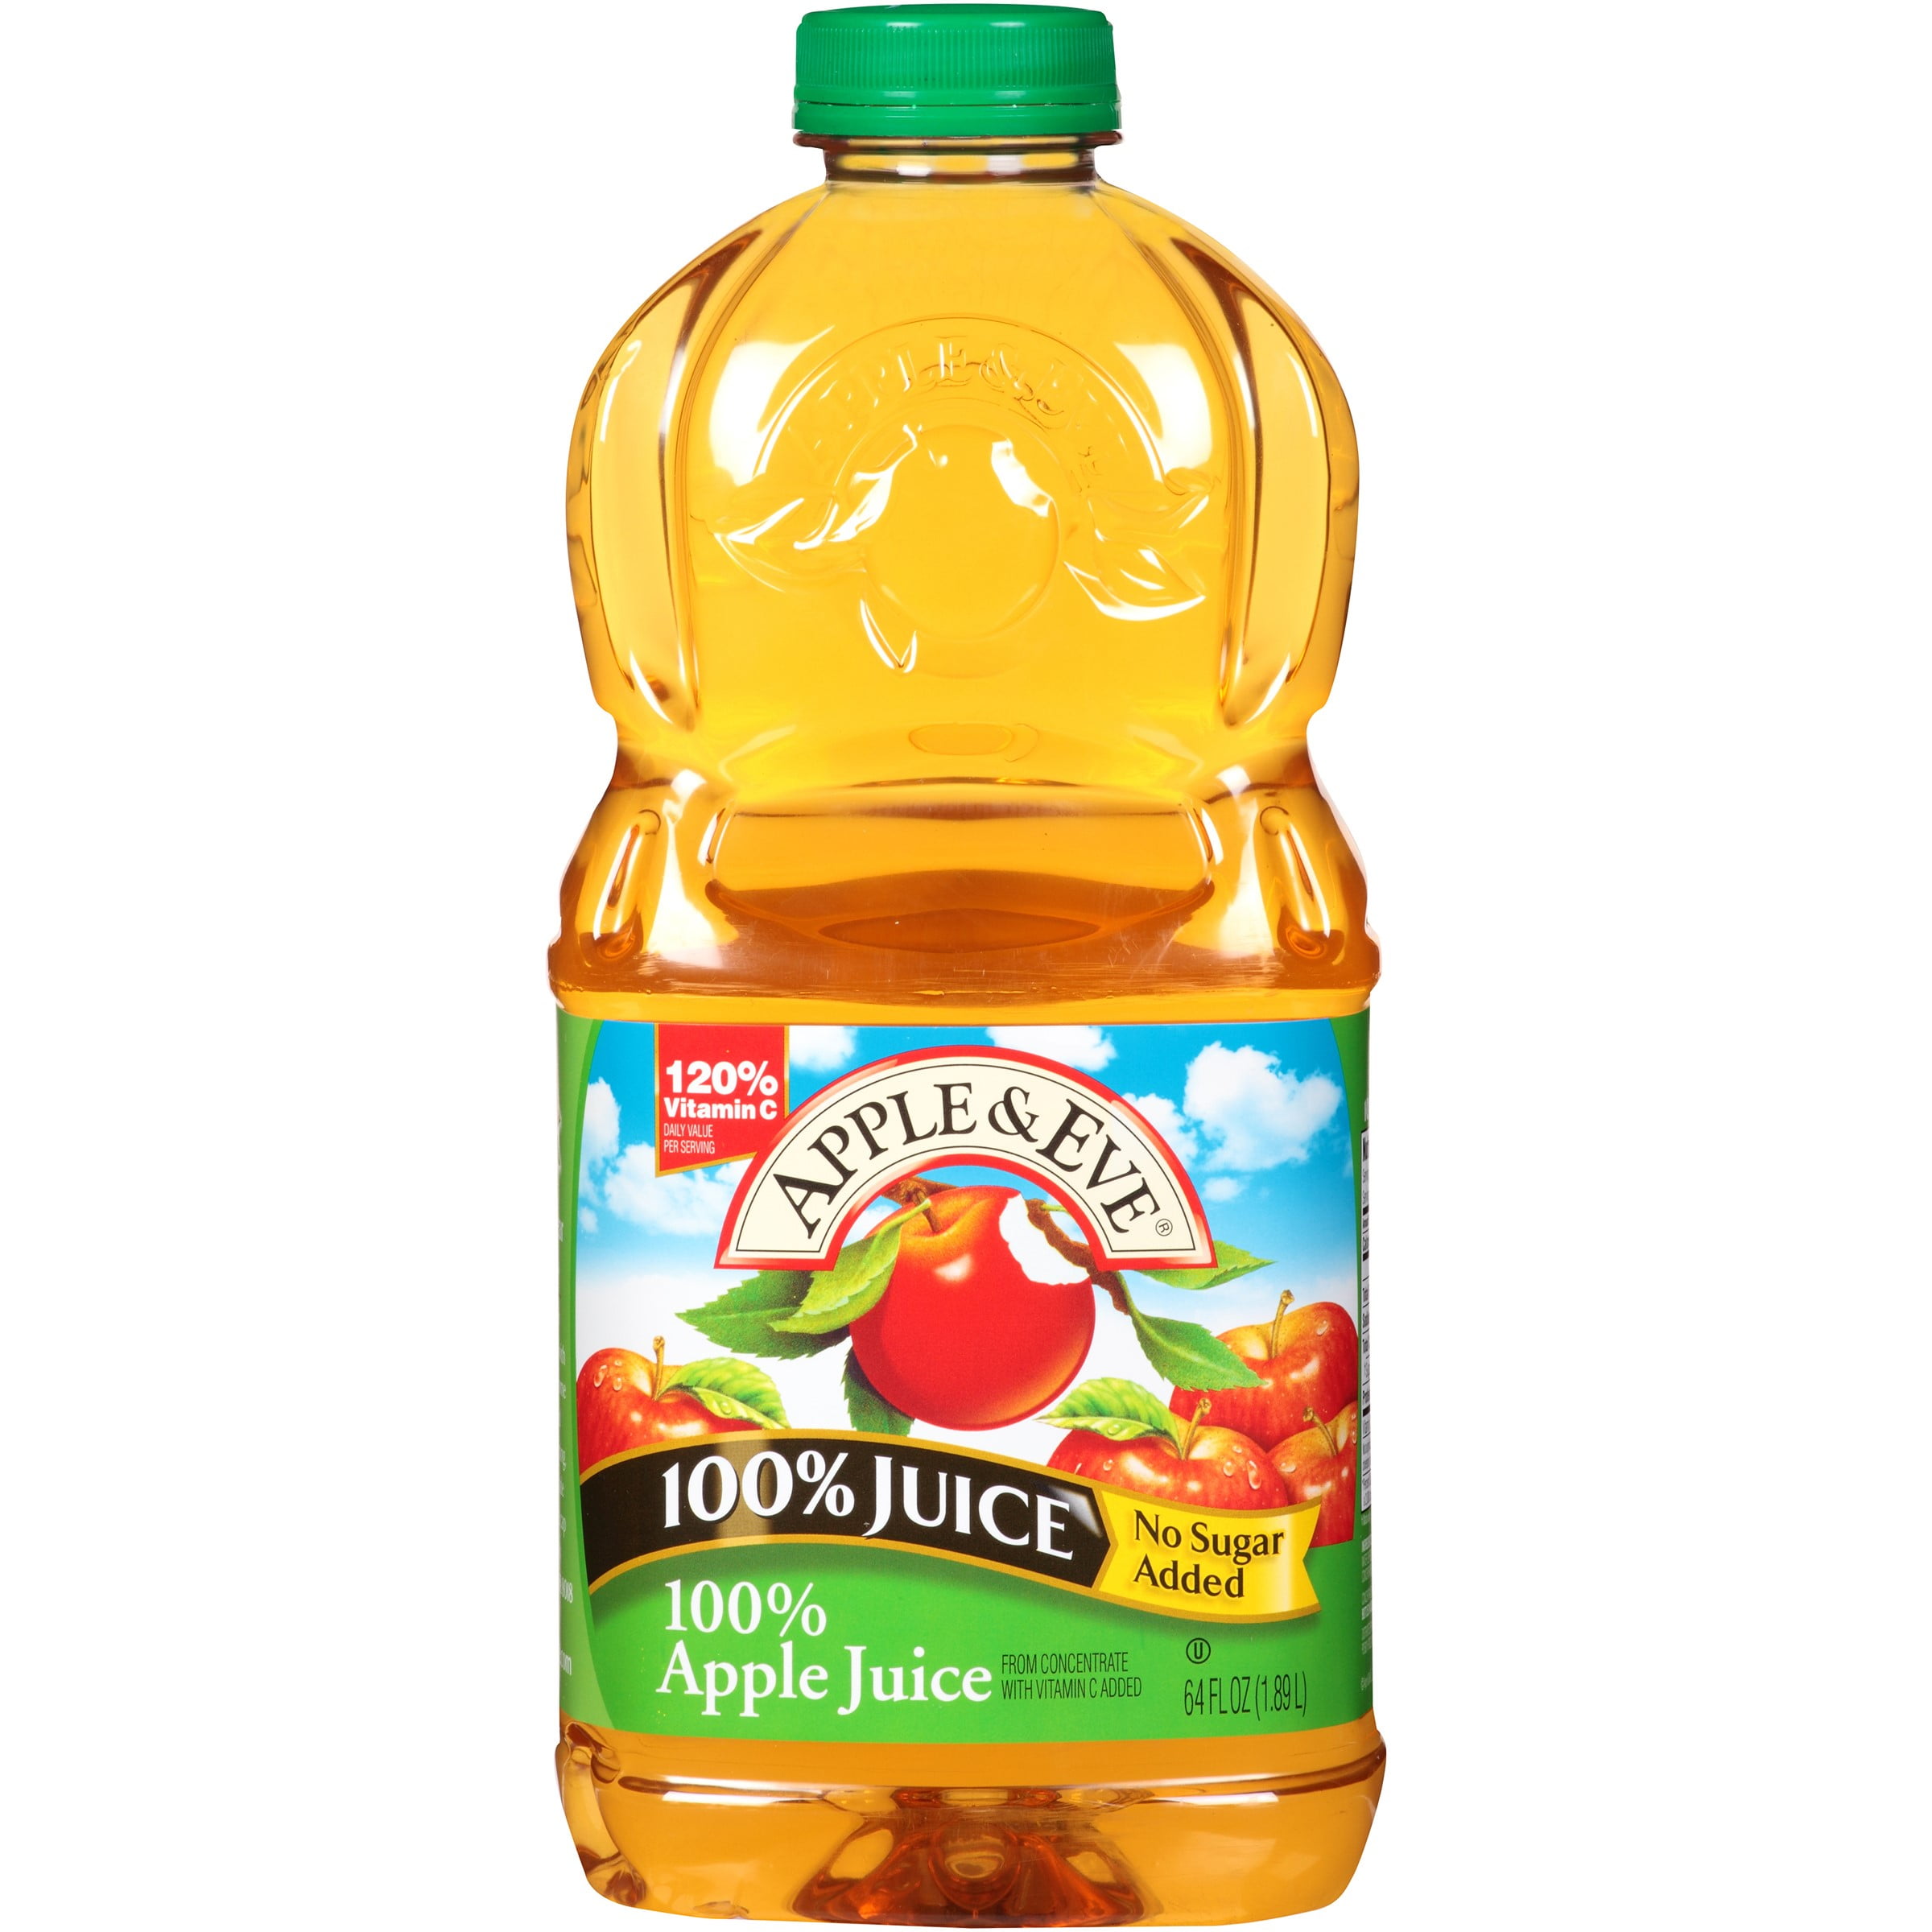 adam eve apple juice calories